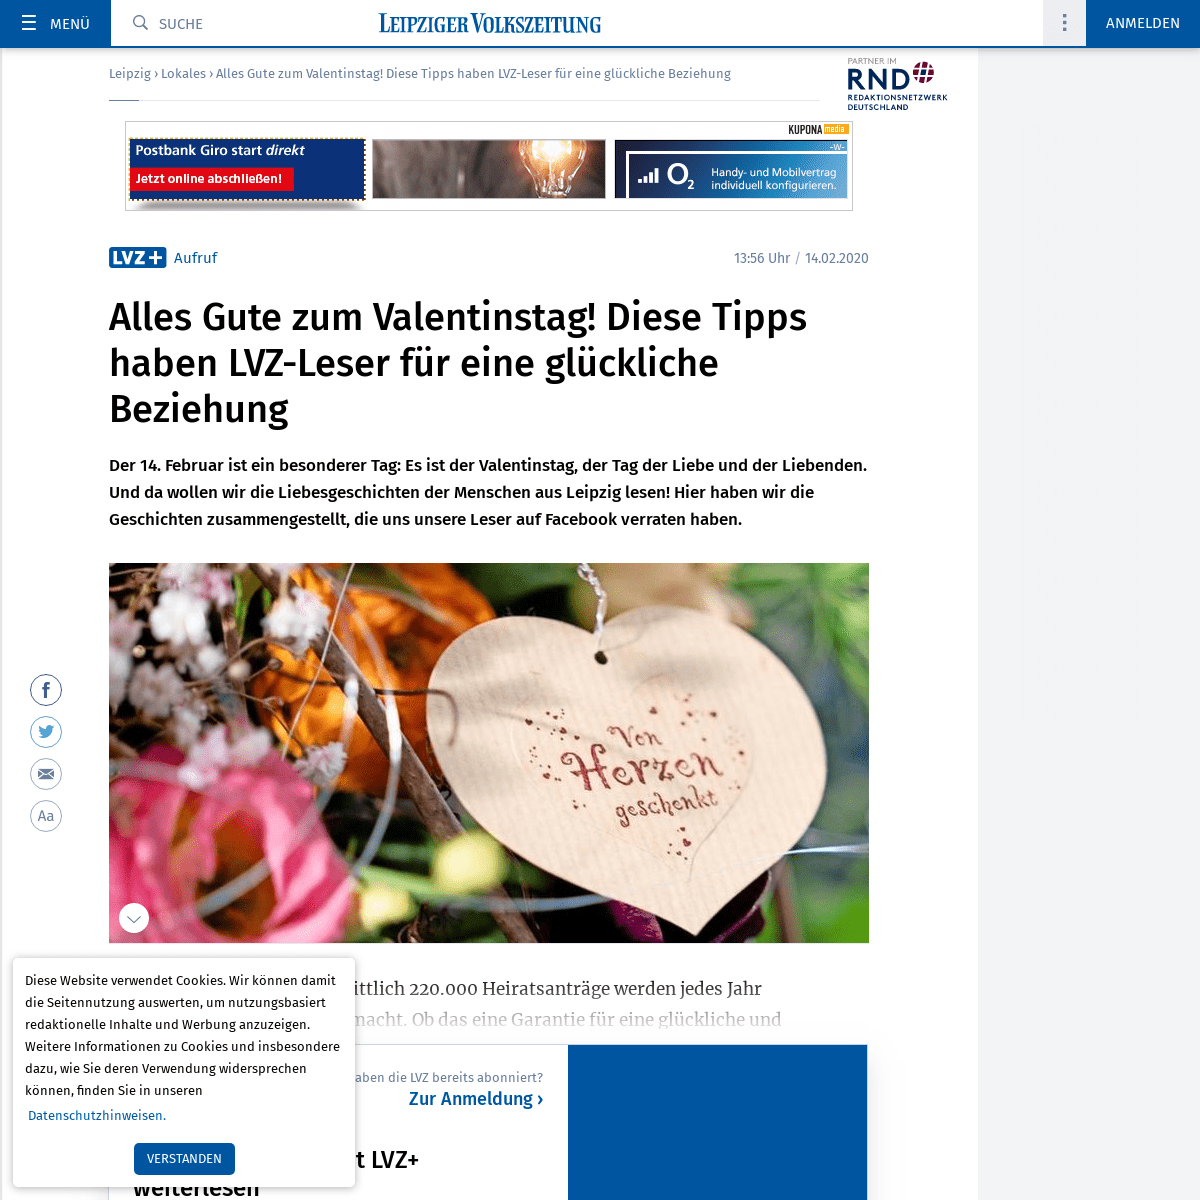 A complete backup of www.lvz.de/Leipzig/Lokales/Alles-Gute-zum-Valentinstag!-Diese-Tipps-haben-LVZ-Leser-fuer-eine-glueckliche-B